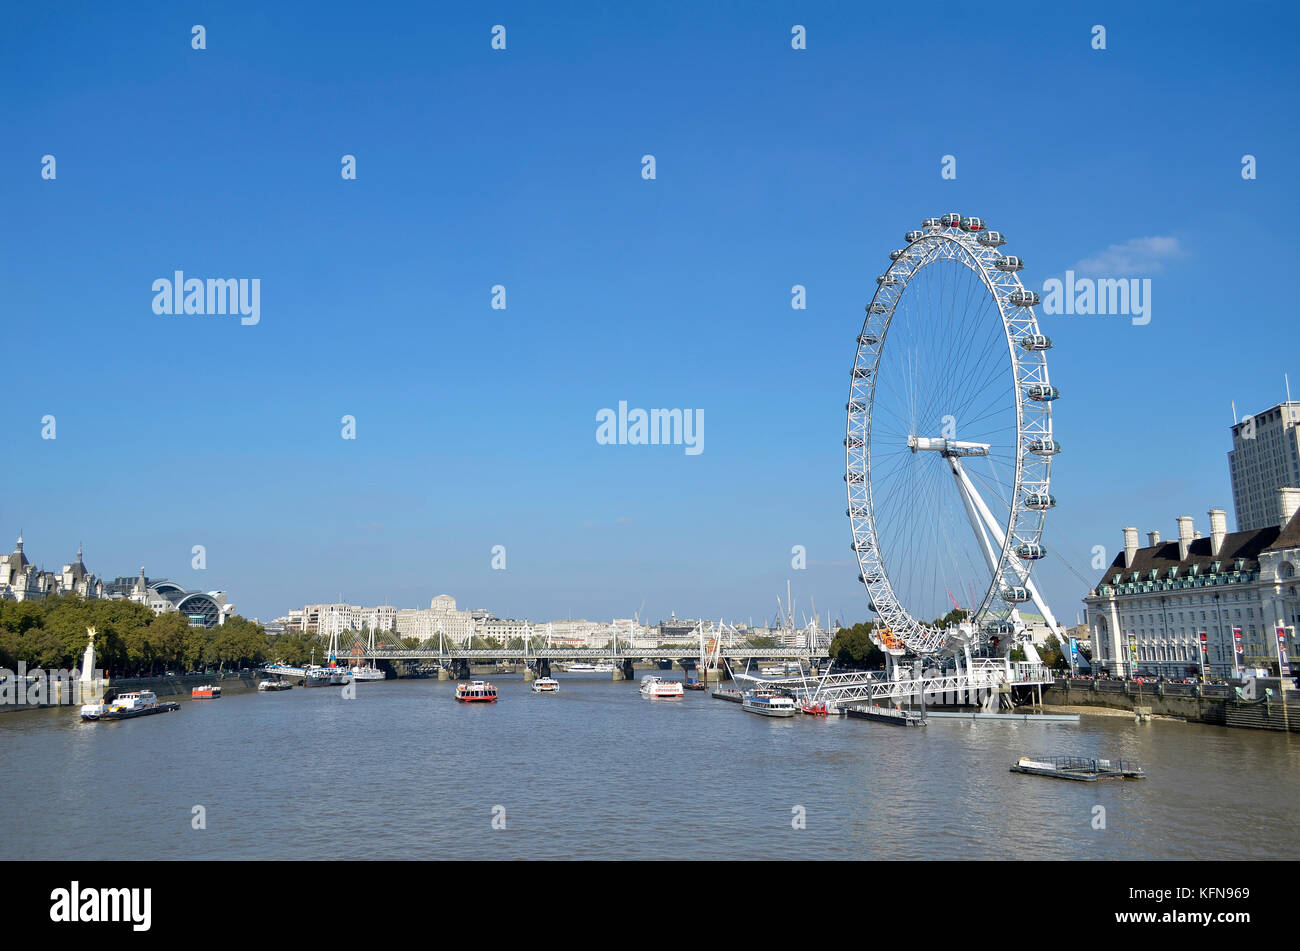 London Eye, River Thames, London, UK. Stock Photo